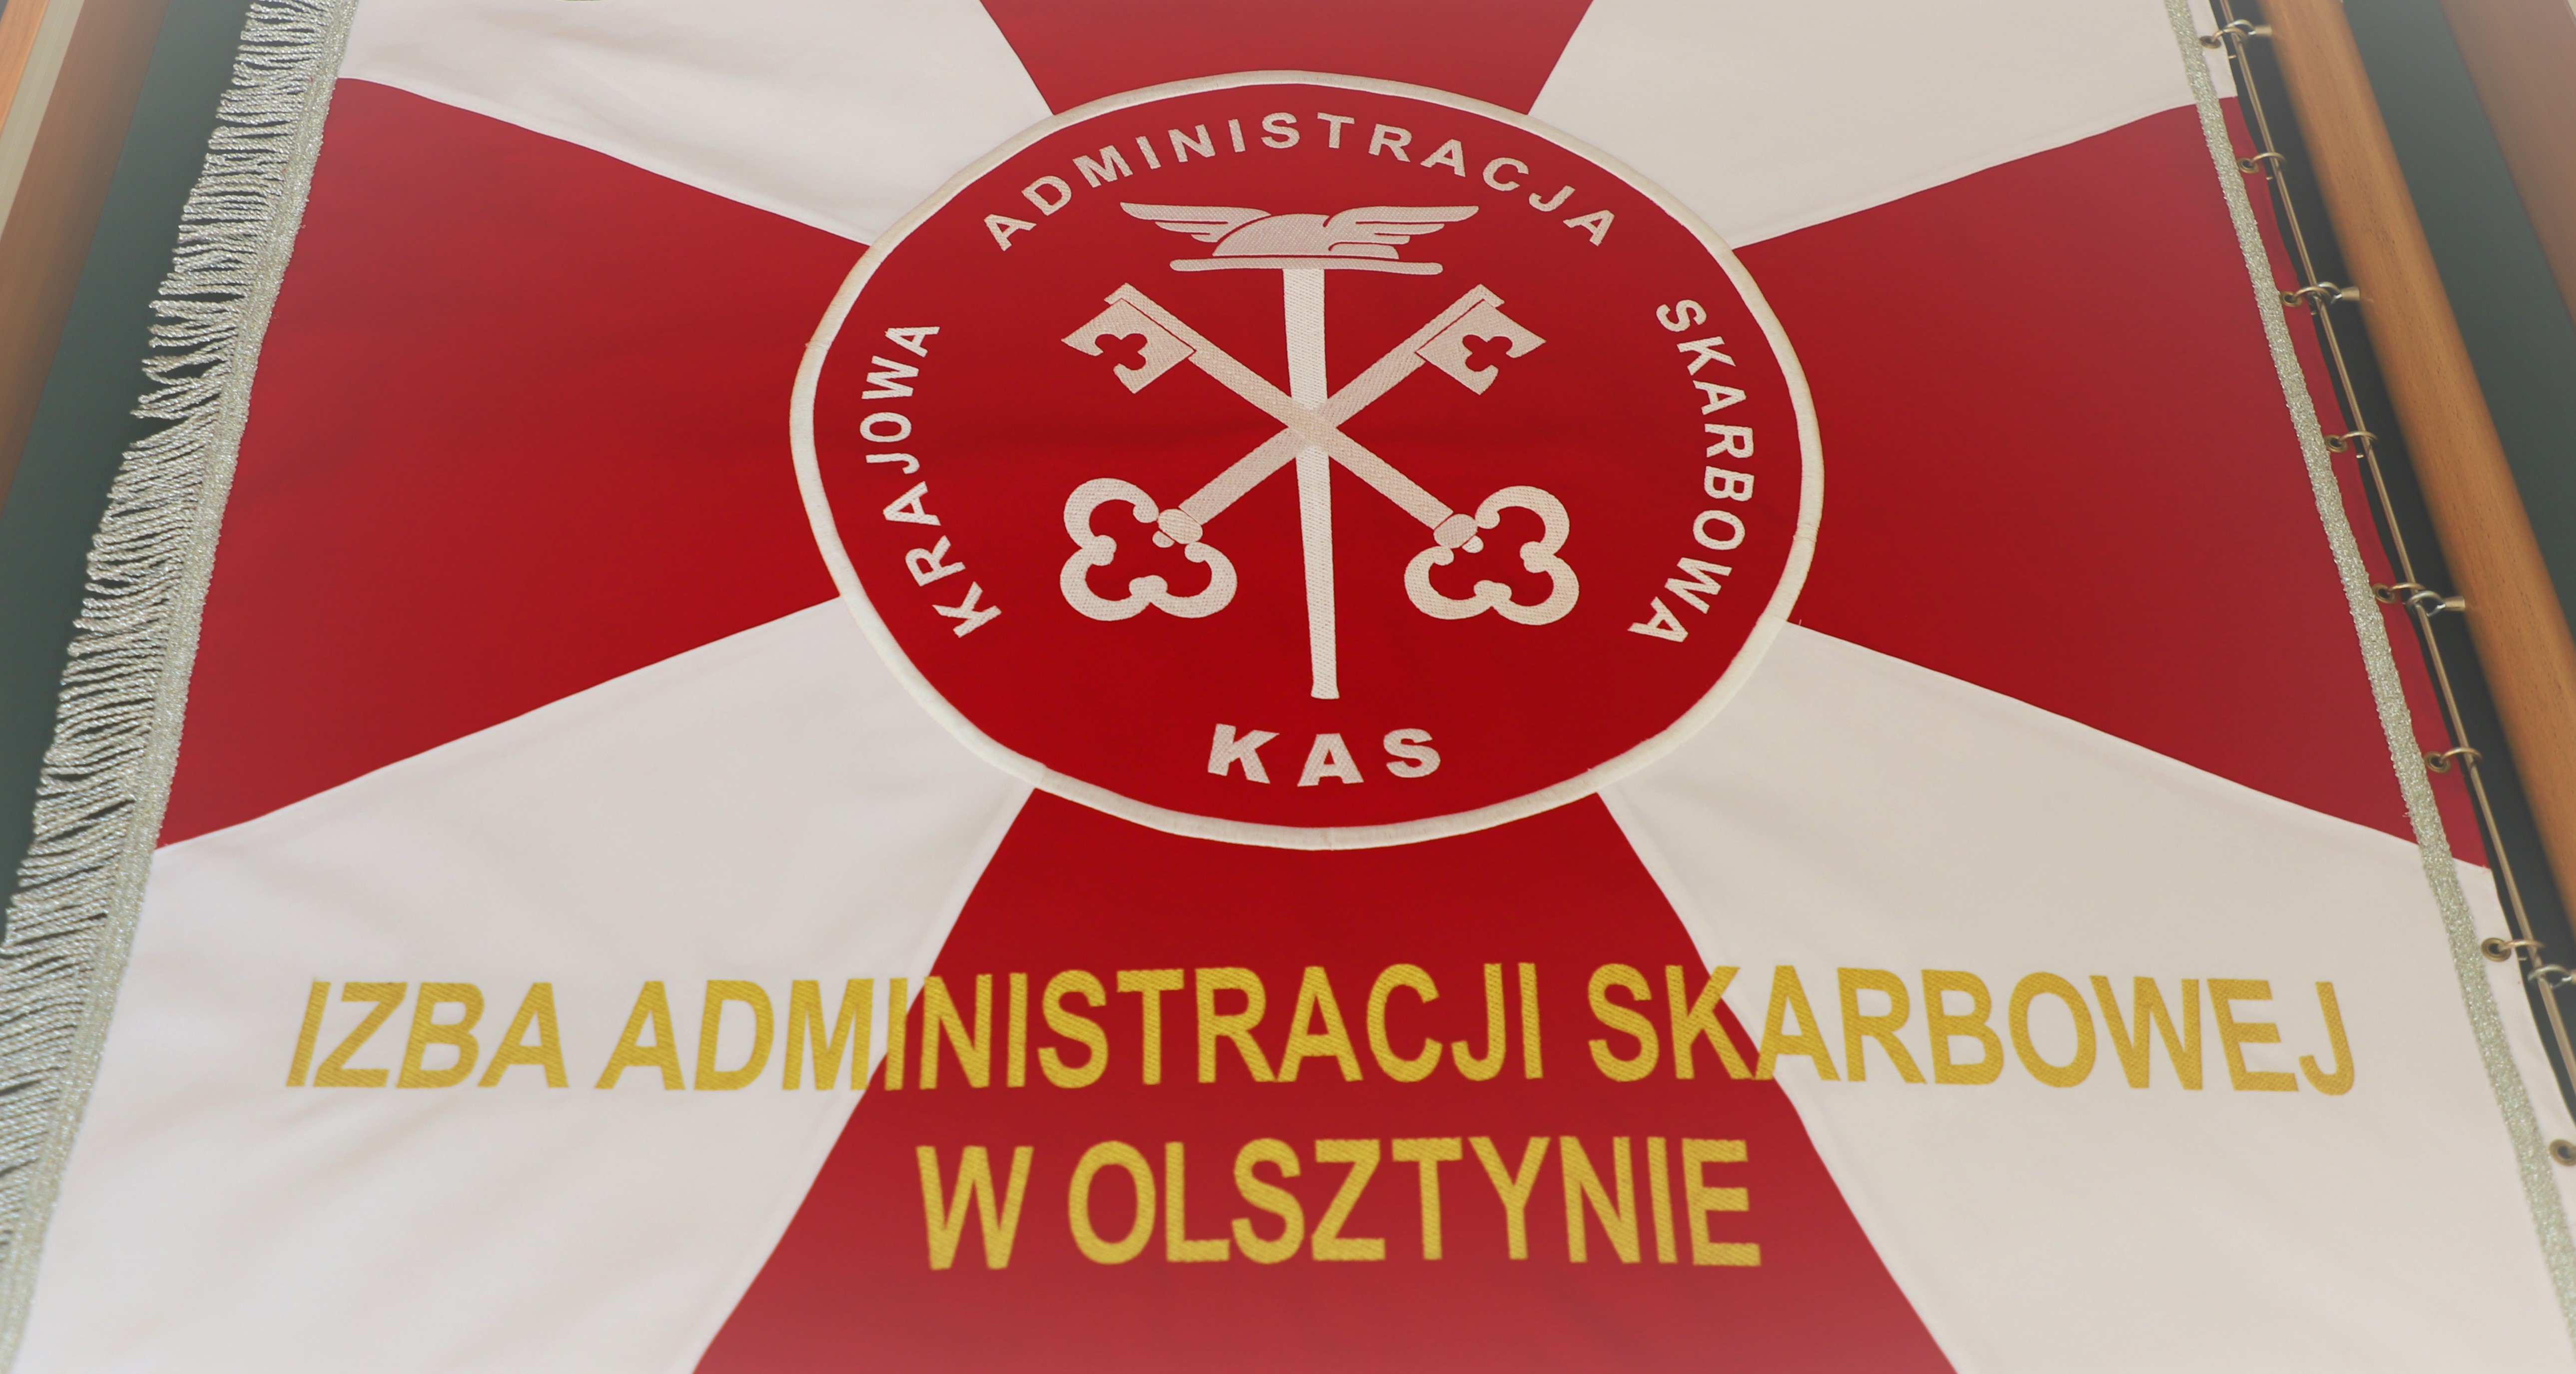 Sztandar Izby Administracji Skarbowej w Olsztynie. Sztandar ma biało-czerwone kolory i godło: dwa skrzyżowane klucze na tle laski z uskrzydlonym kapeluszem Merkurego, na emblemacie w kształcie koła.